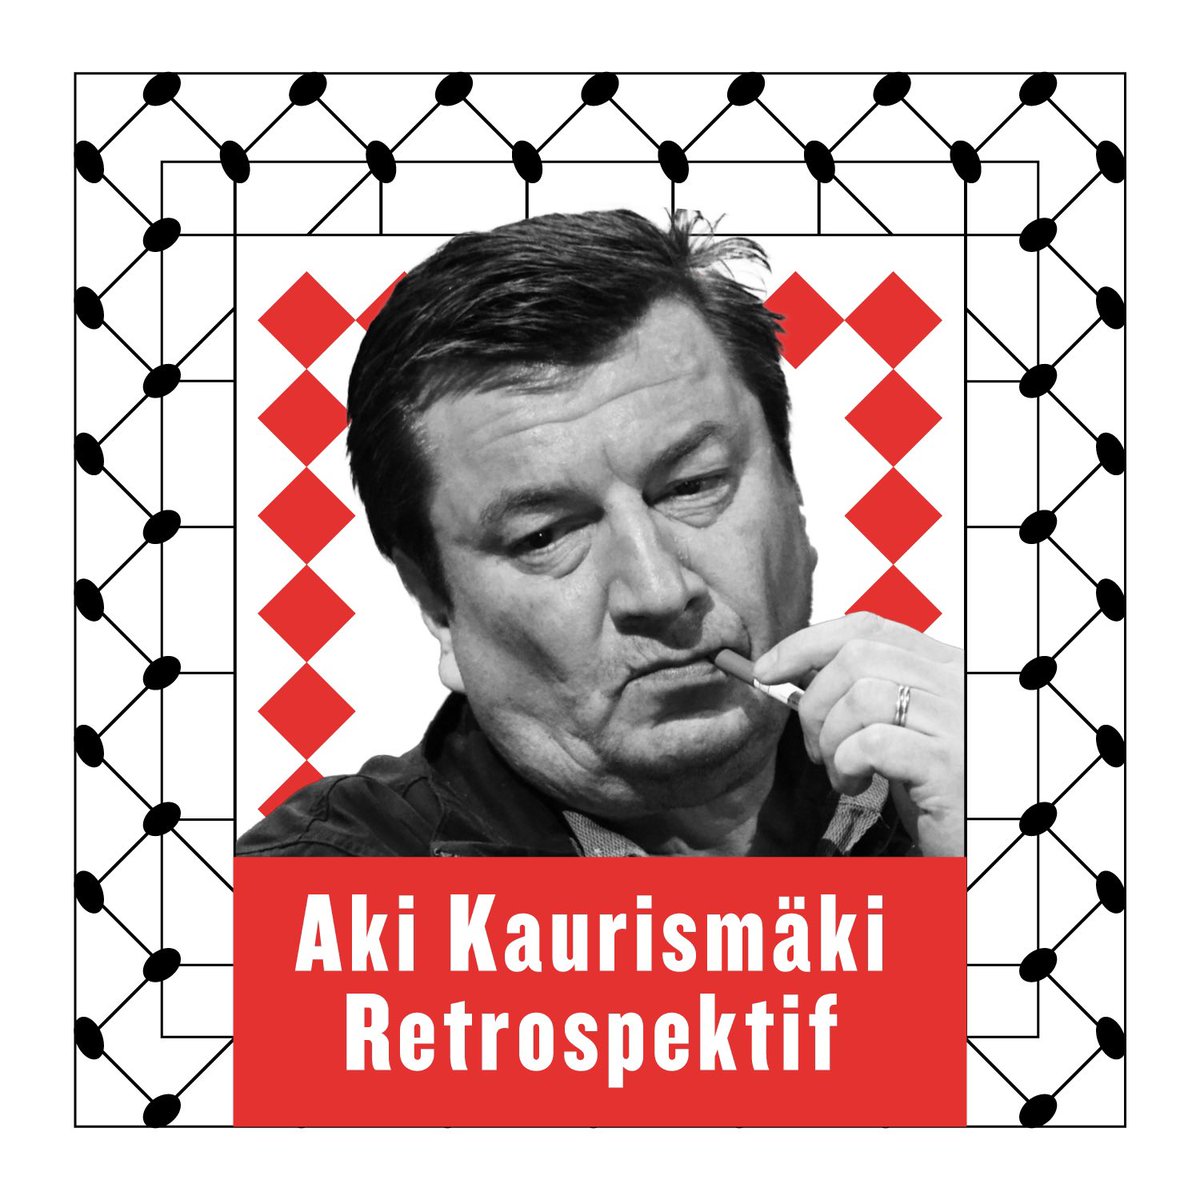 Aki Kaurismäki Toplu Gösterimi İşçi Filmleri Festivali’nde sizlerle!

Her filmi işçi sınıfına değinen Kaurismäki’nin, odak noktası işçi sınıfı olan “Proletarya Üçlemesi” ve ek olarak geçen yılın çok konuşulan başarılı filmi “Sararmış Yapraklar” da bu yılki seçkimizde yer alıyor.